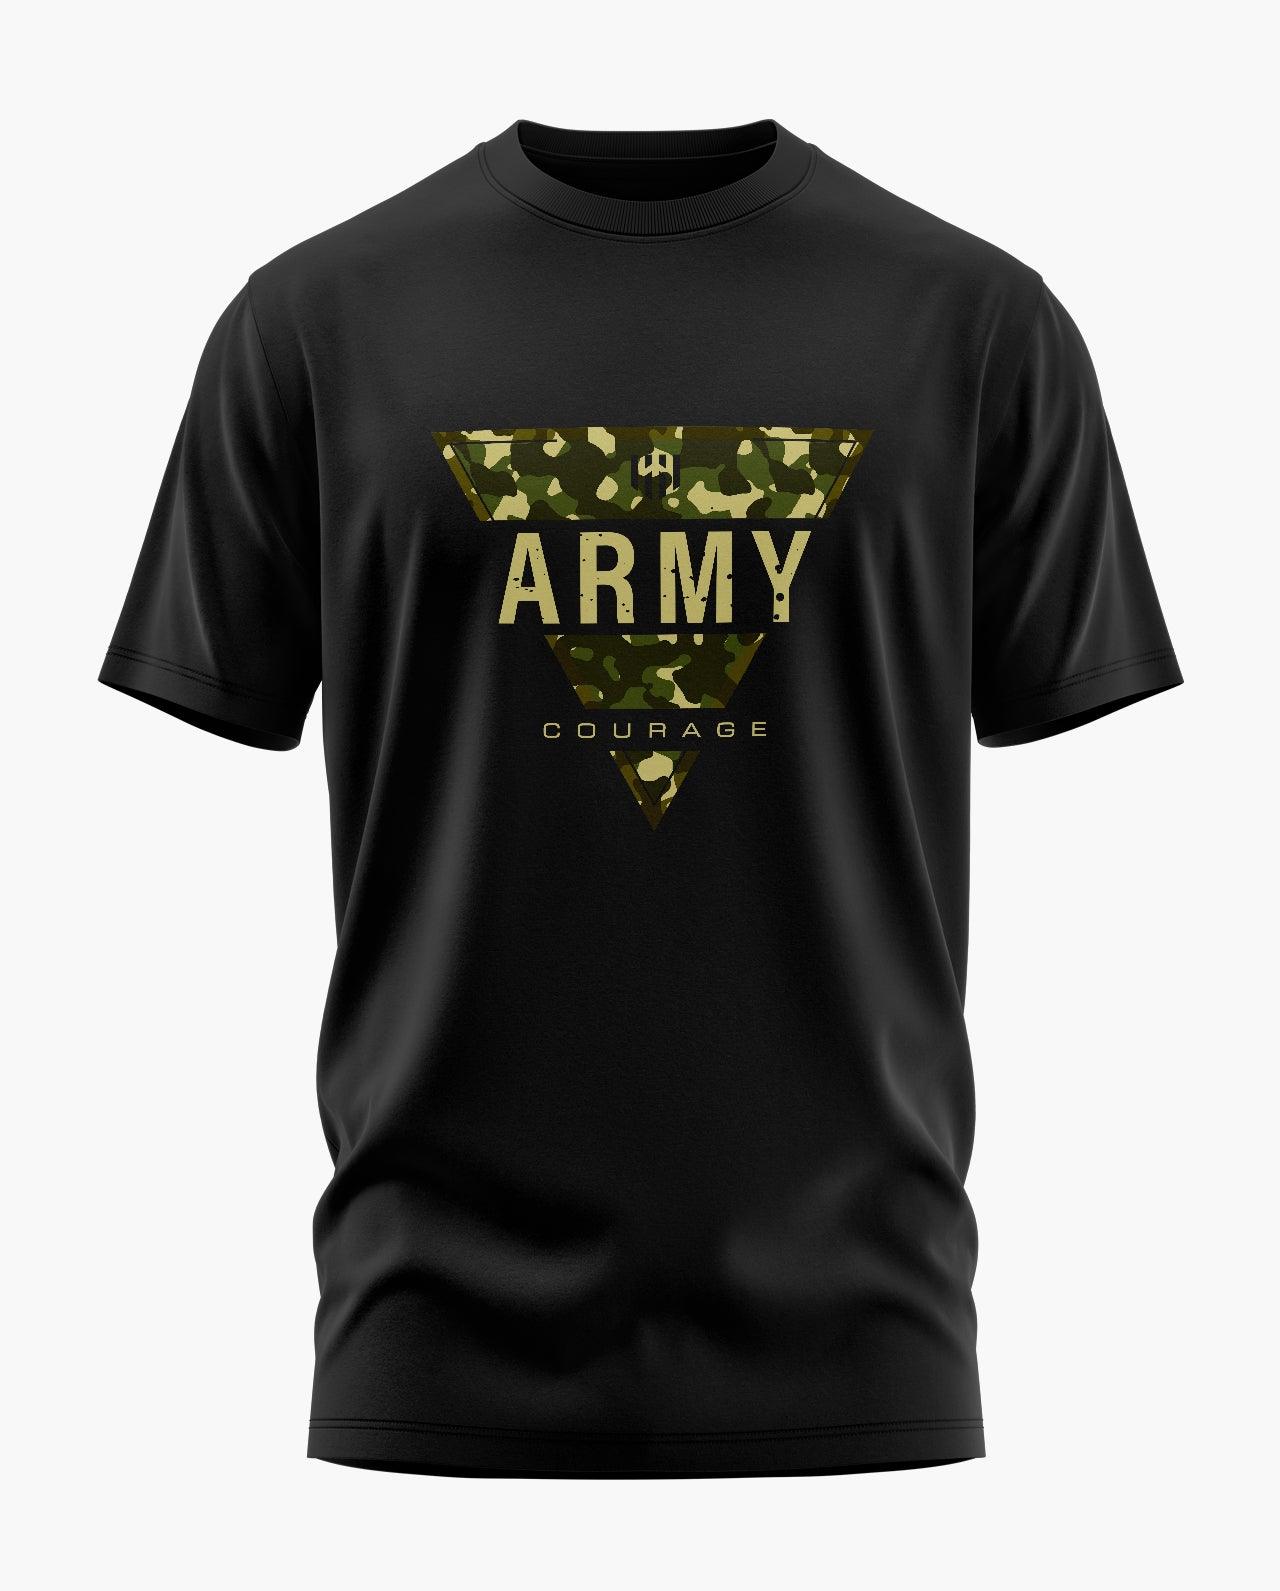 Army Courage T-Shirt - Aero Armour